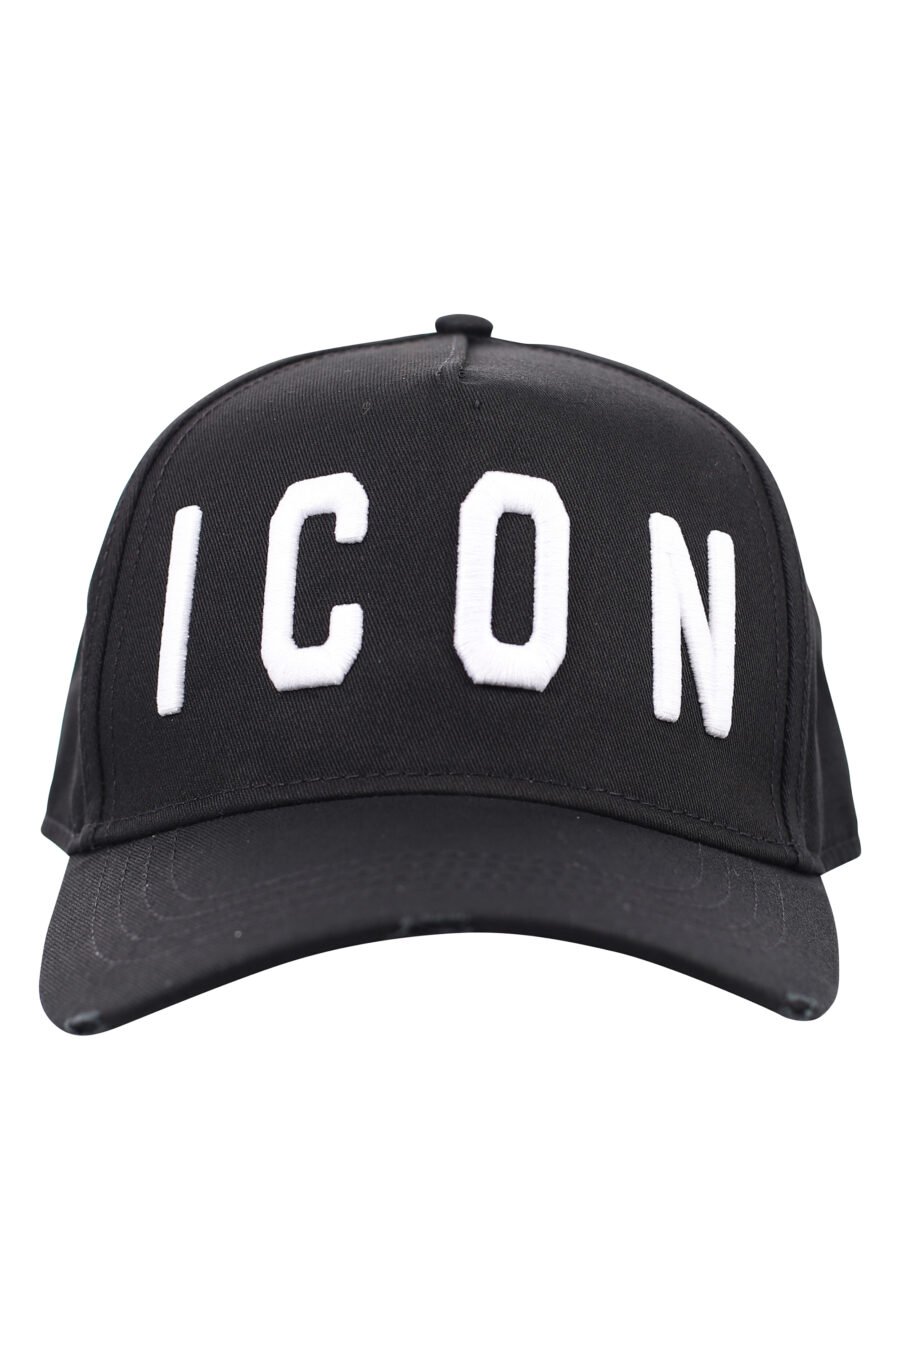 Black cap with white "icon" logo - IMG 1832